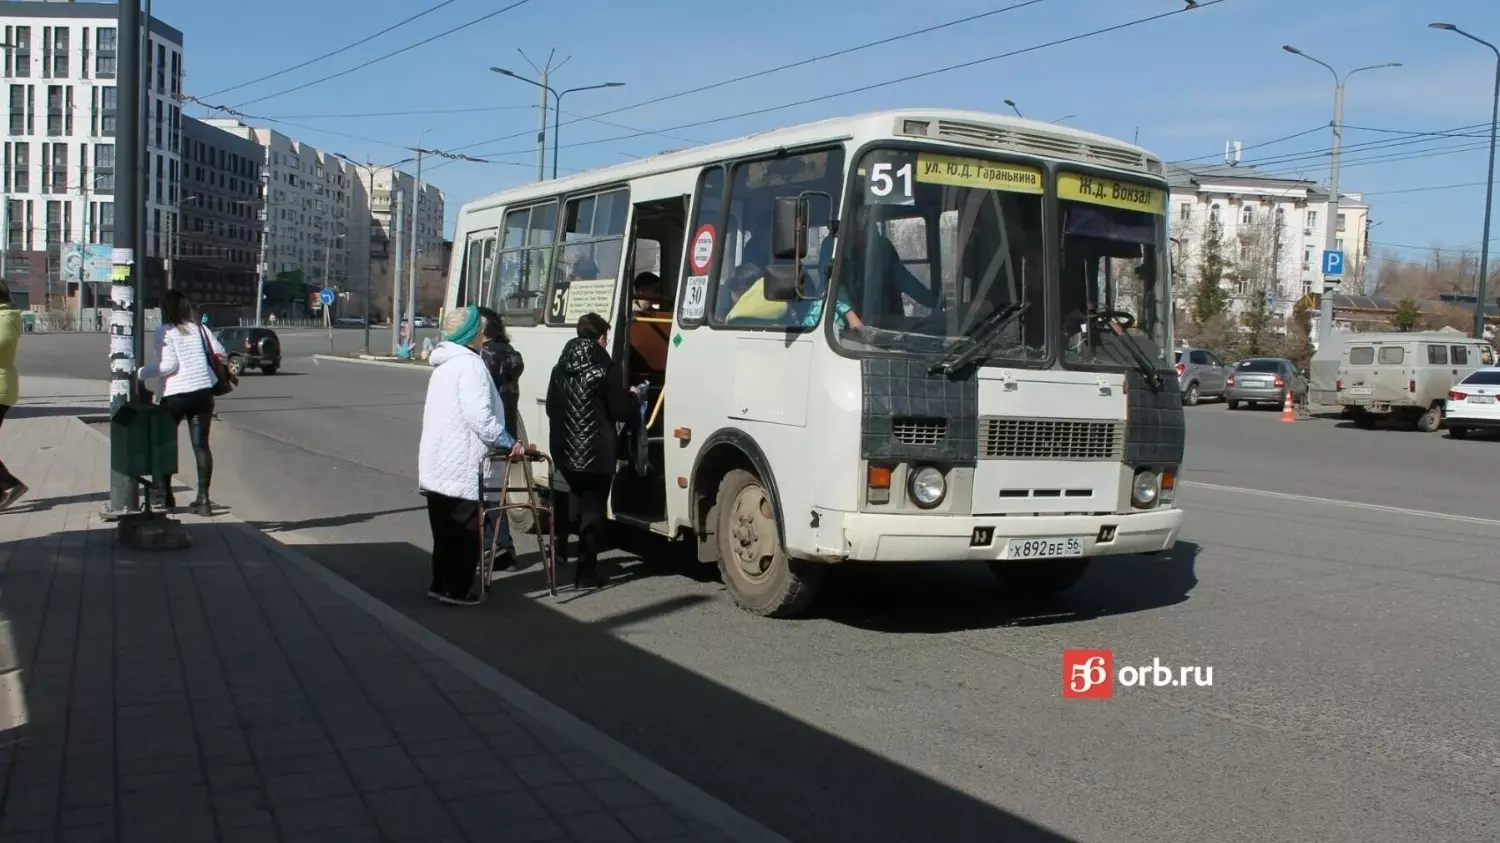 В 2018 году проехать в троллейбусе можно было за 13 рублей